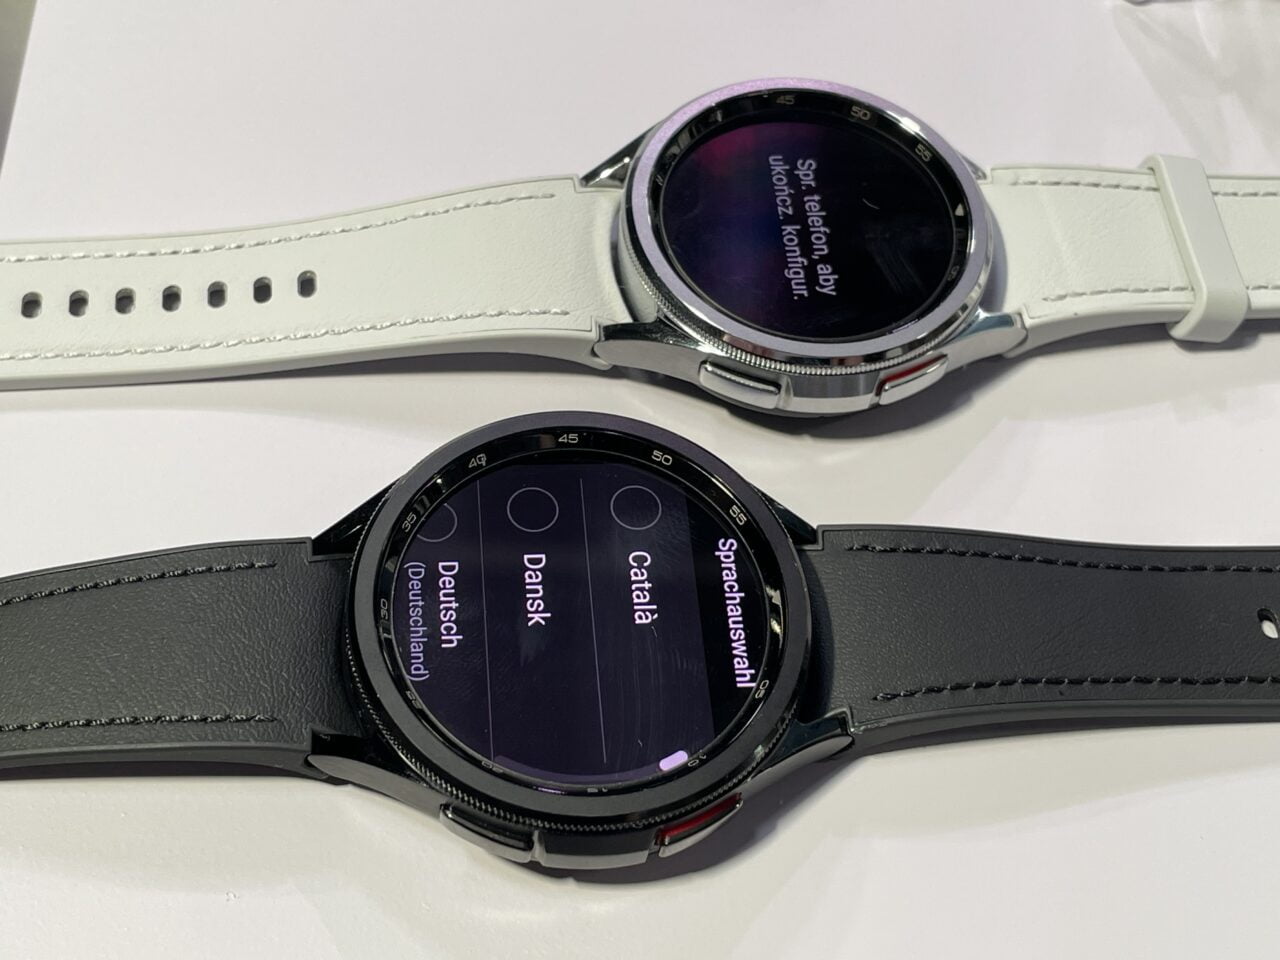 Dwa inteligentne zegarki z paskami - jeden z białym paskiem i czarnym wyświetlaczem, a drugi z czarnym paskiem i wyświetlaczem pokazującym opcje językowe.